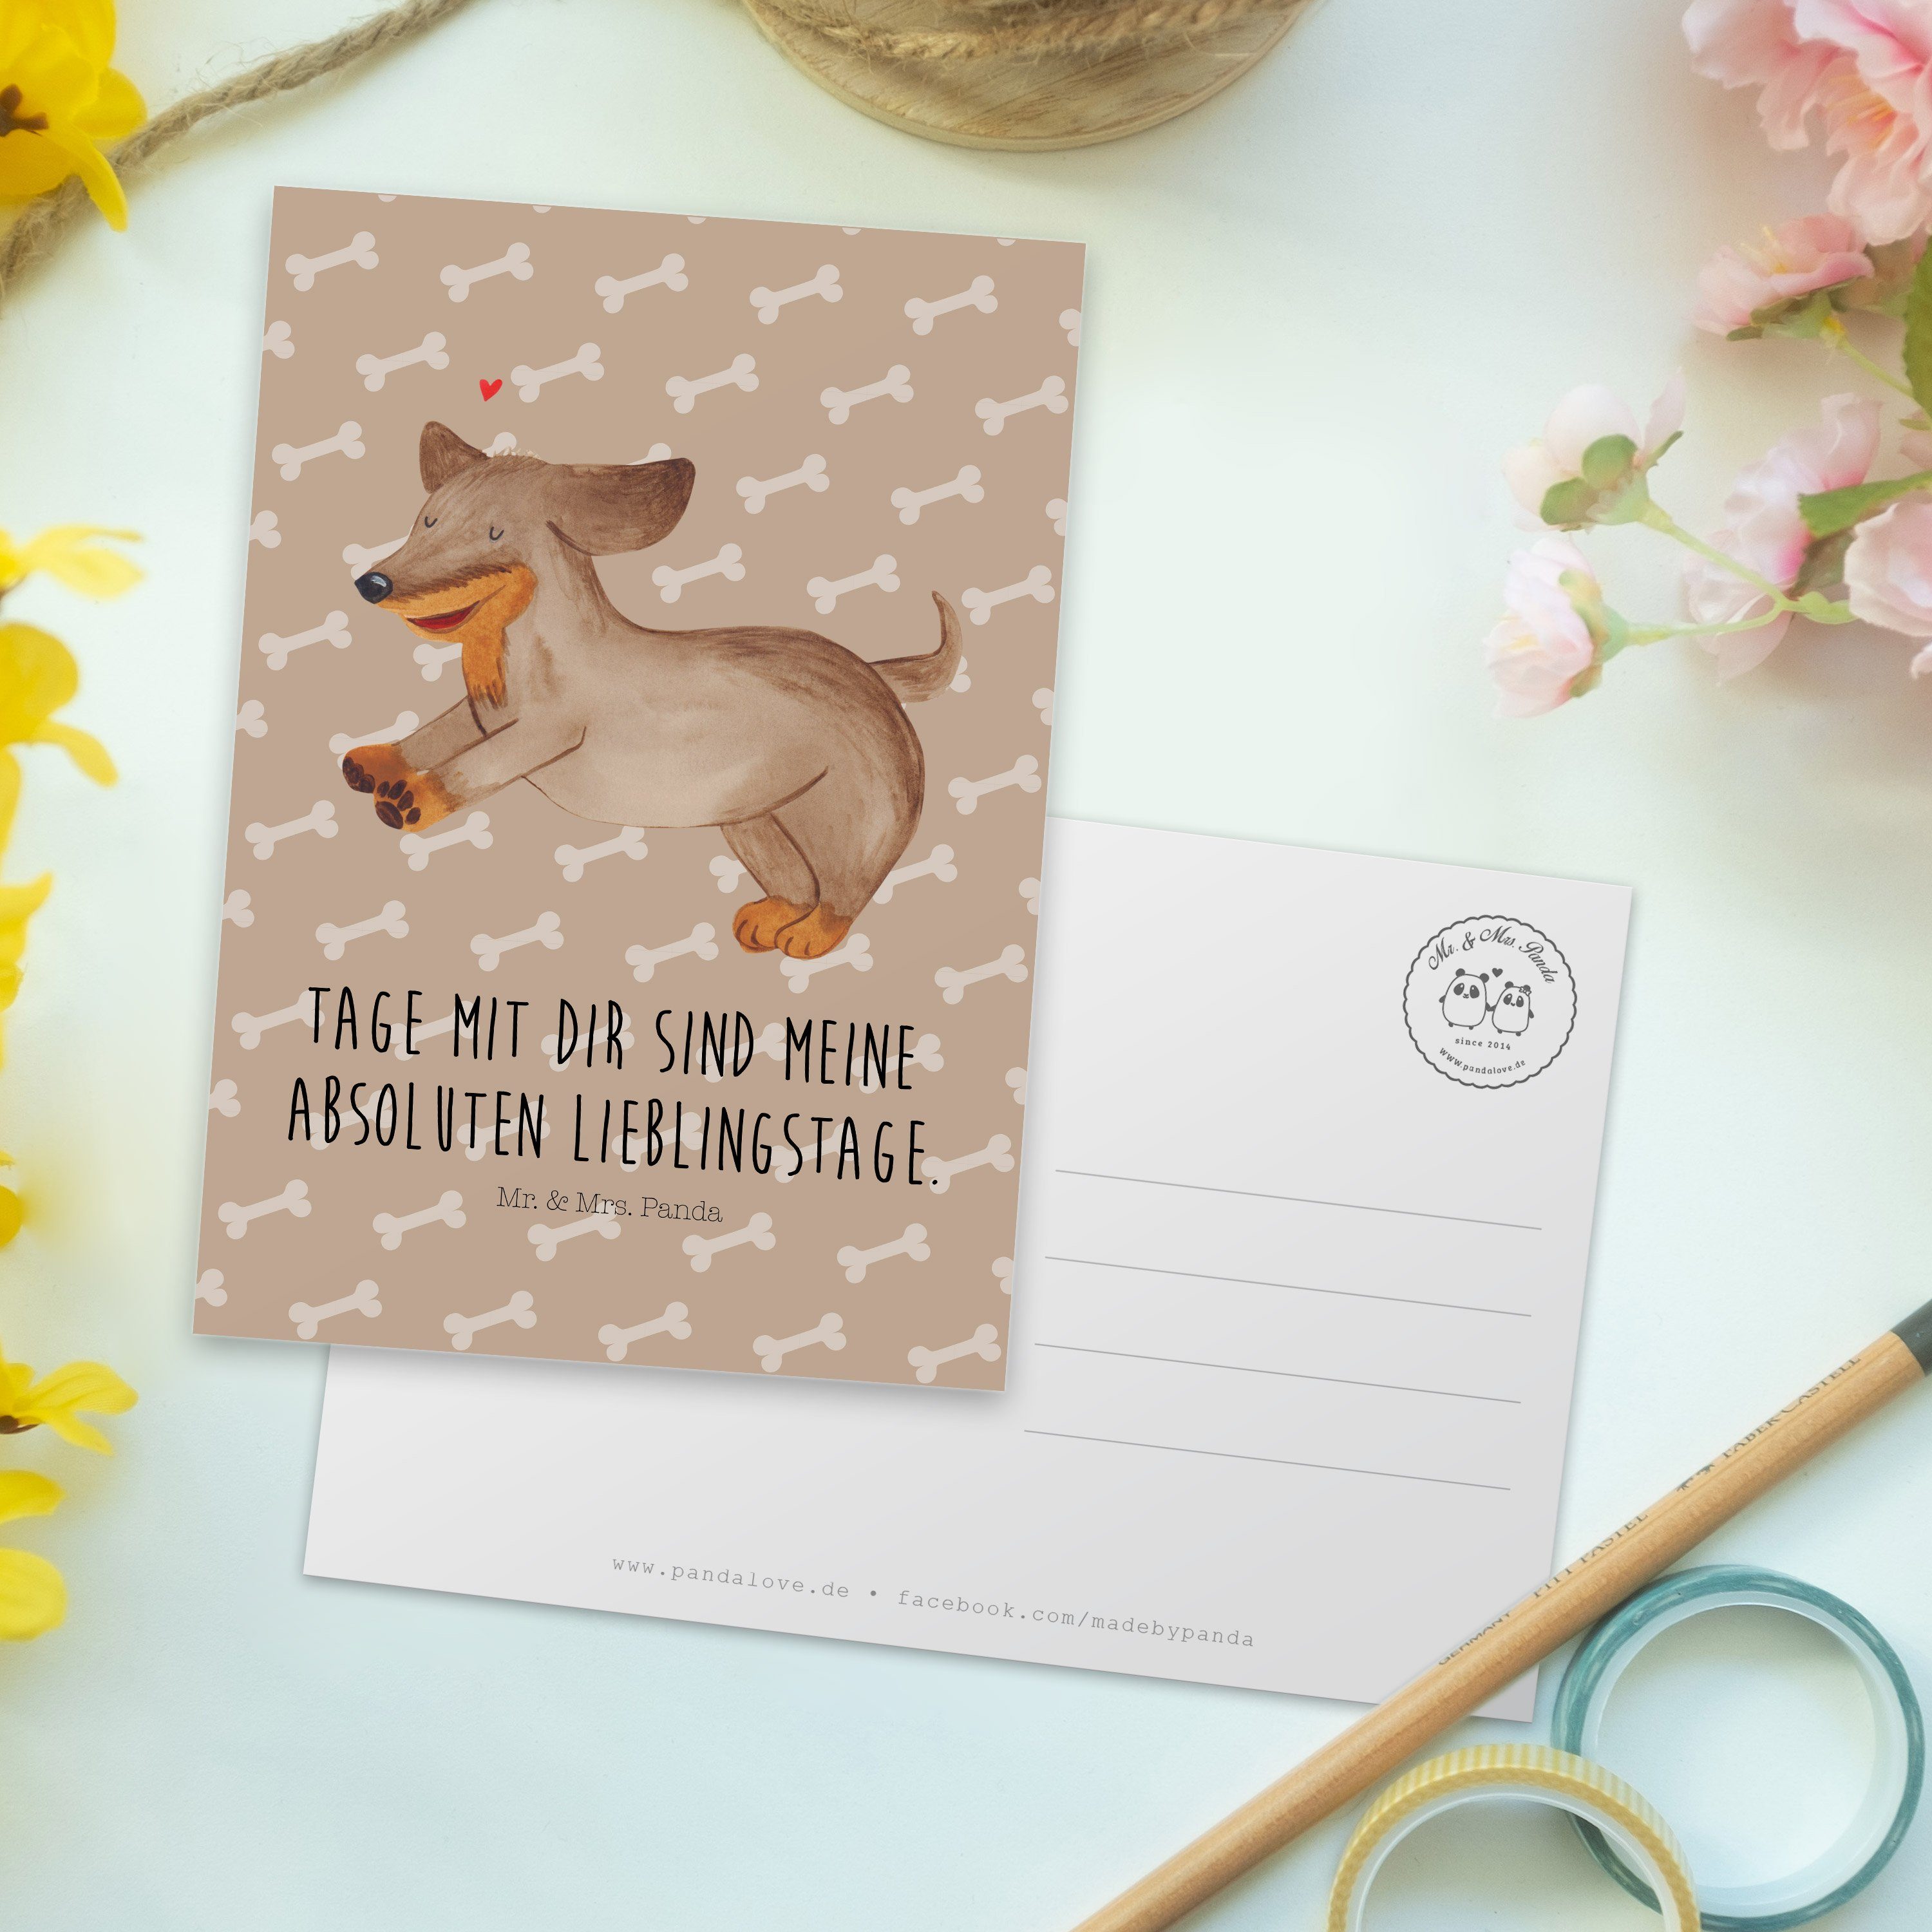 Mr. & Mrs. Panda Einladungs fröhlich Geschenk, Dackel Postkarte - Hund - Dankeskarte, Hundeglück